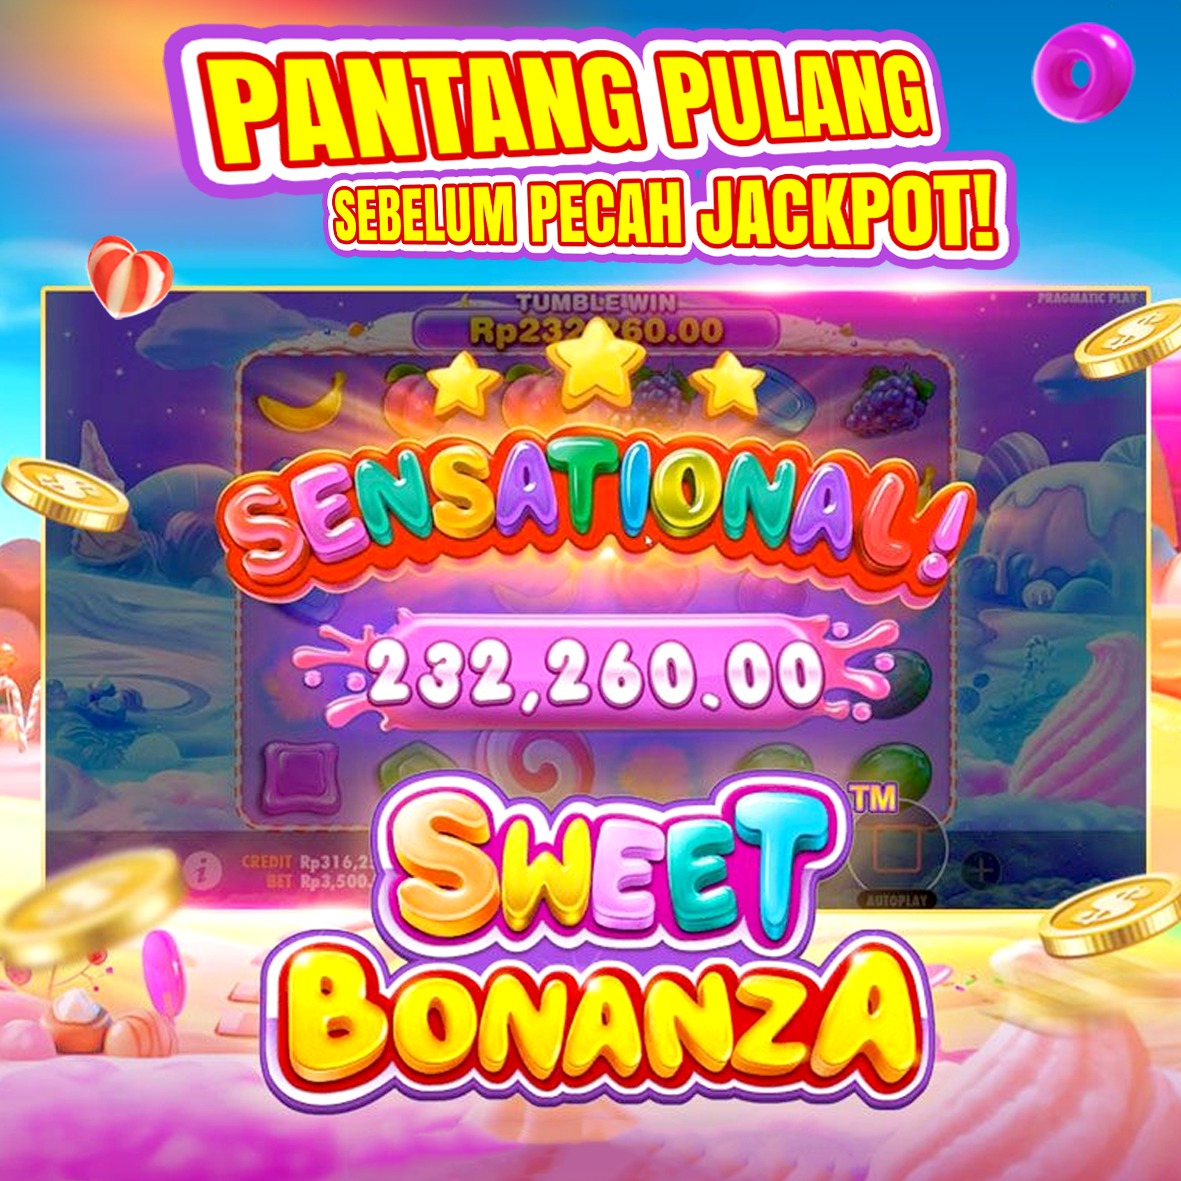 Cara Bermain Game Slot Online Gampang Menang - korankaltara.co